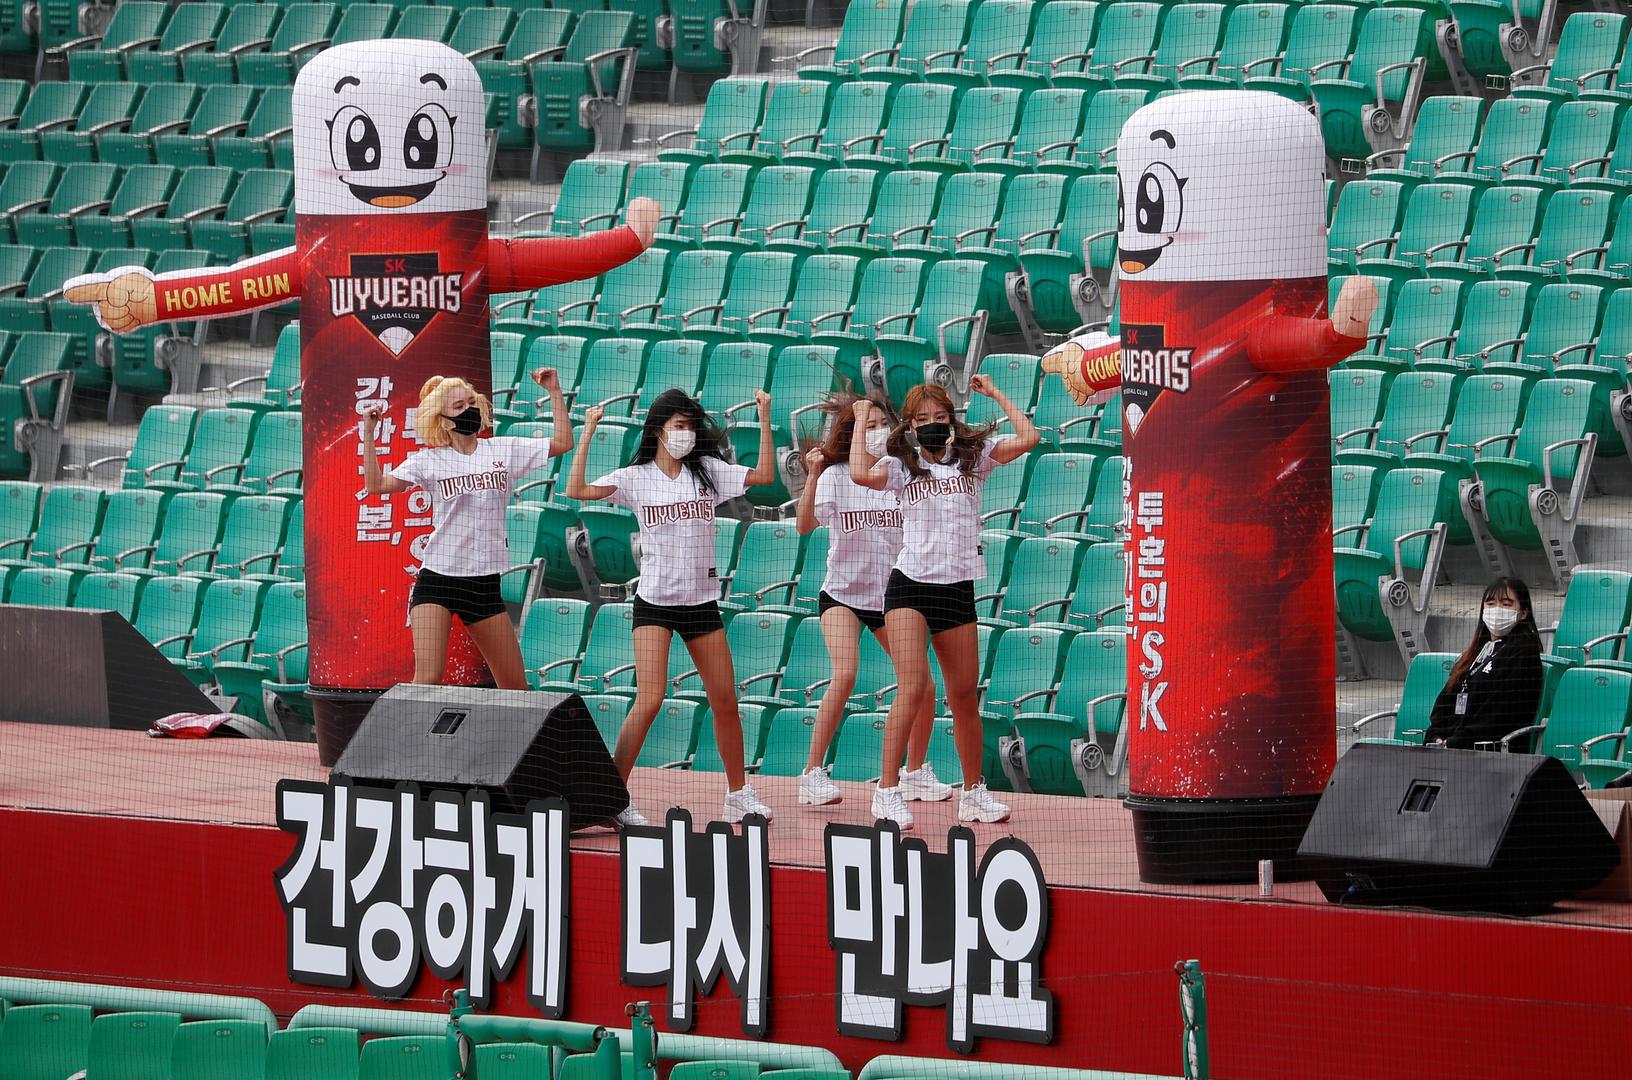 Inače, u Koreji je bejzbol među popularnijim sportovima, a klubovi su za utakmicu angažirali svoje plesne timove